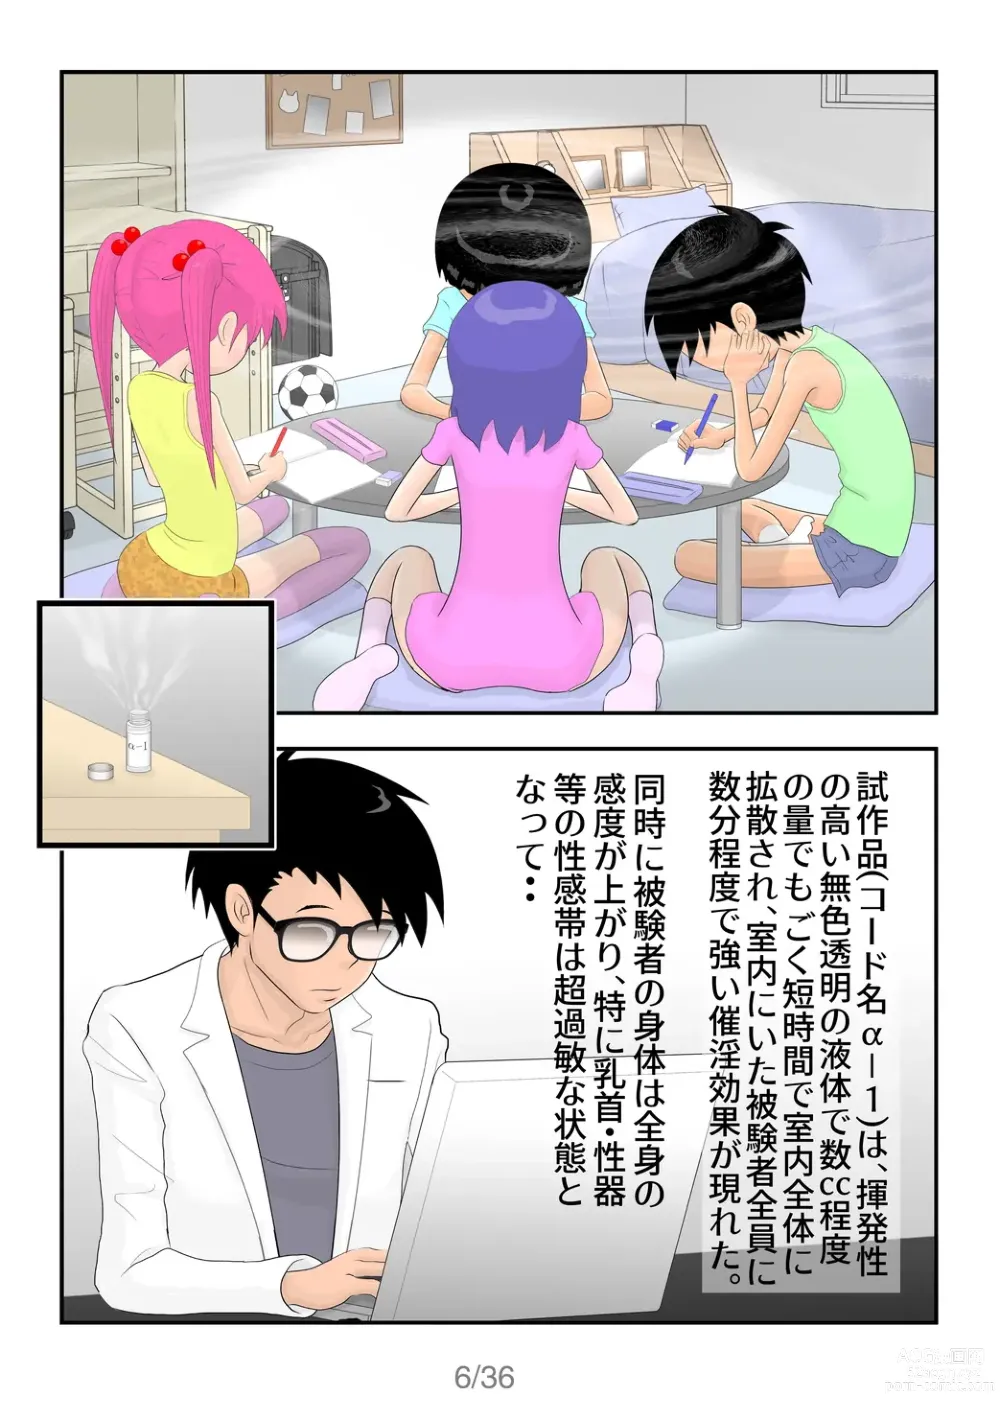 Page 7 of doujinshi BOYS&GIRLS